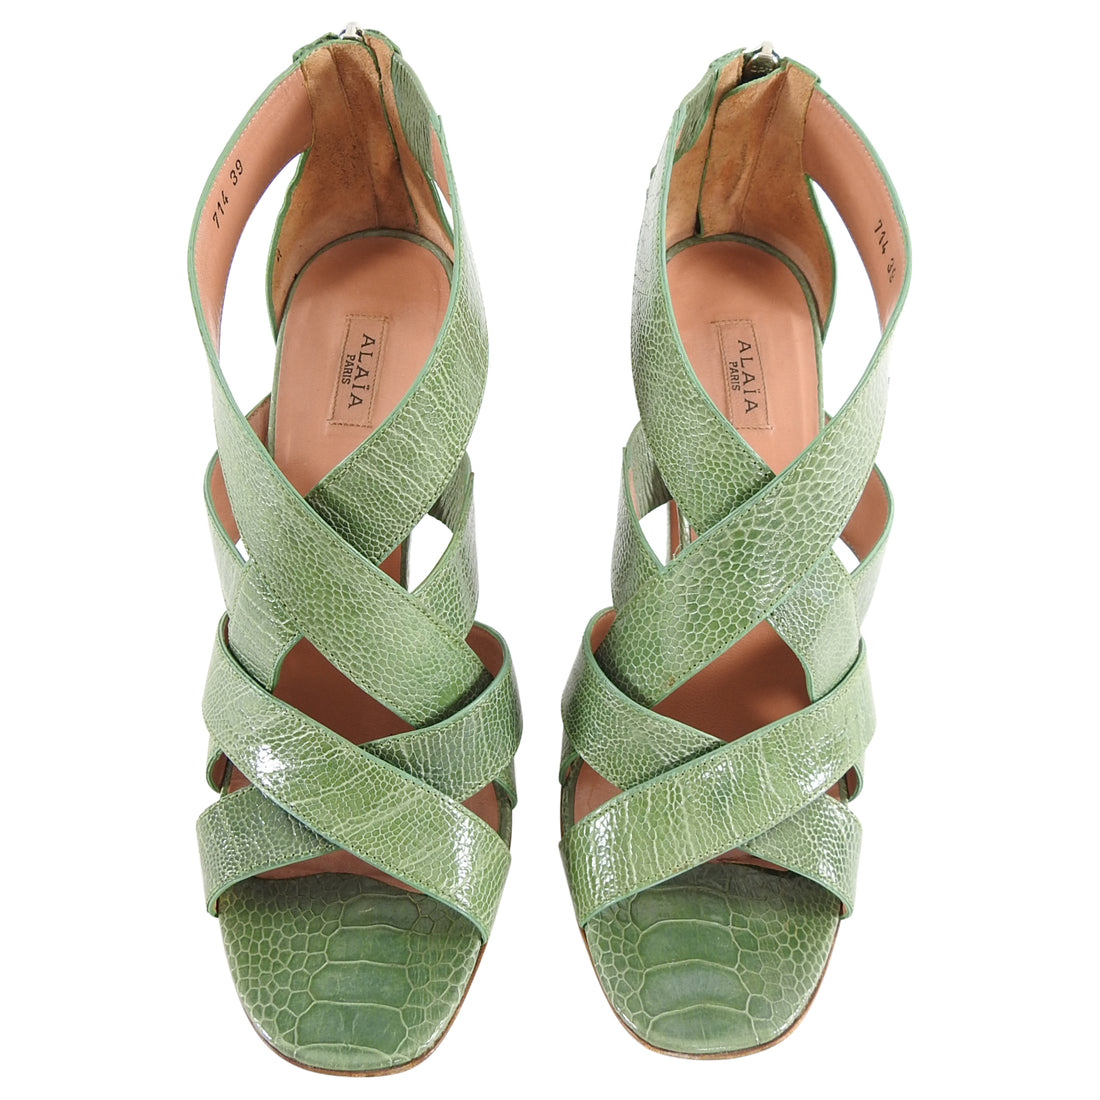 Alaia Green Lizard Criss Cross High Heel Sandals - 39